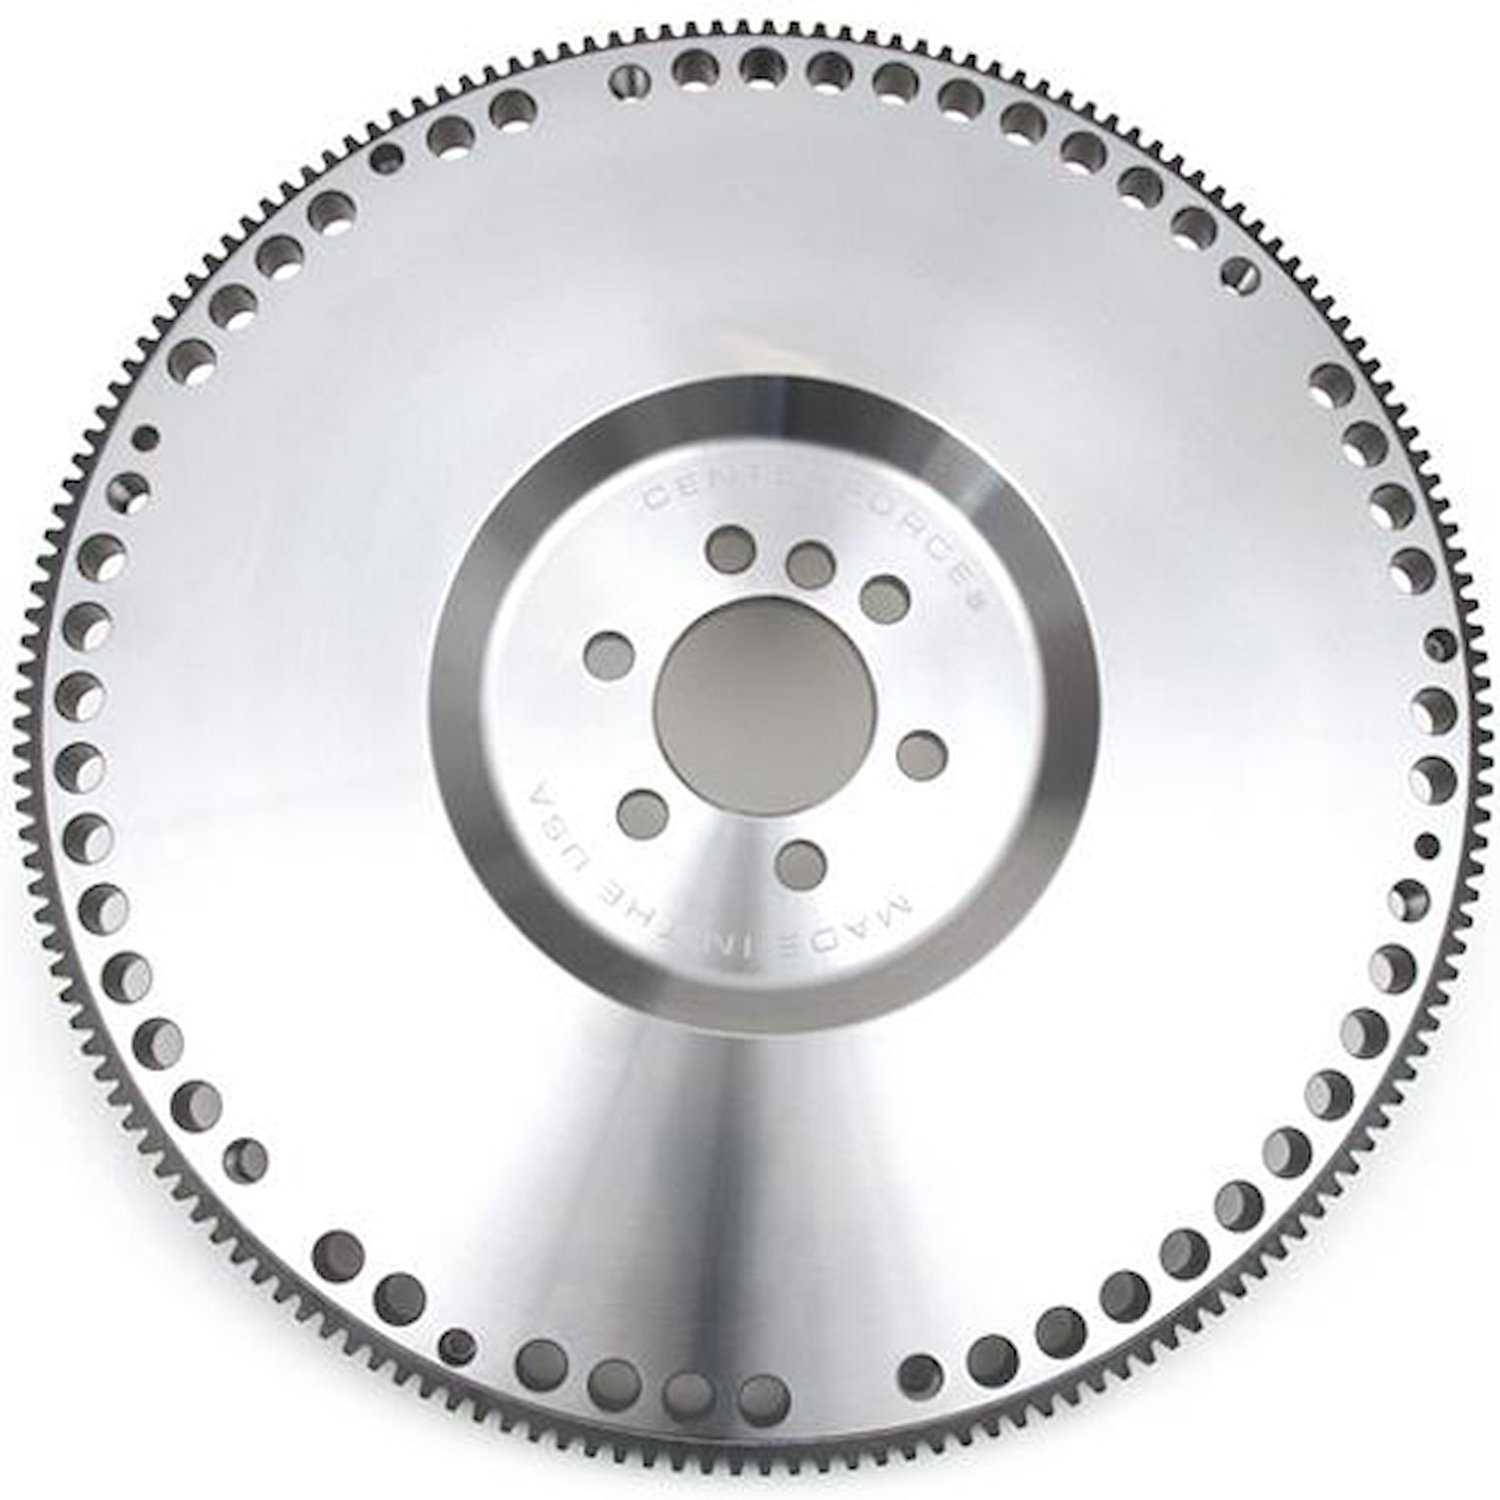 Billet Steel Low Inertia Flywheel for 1997-2015 GM